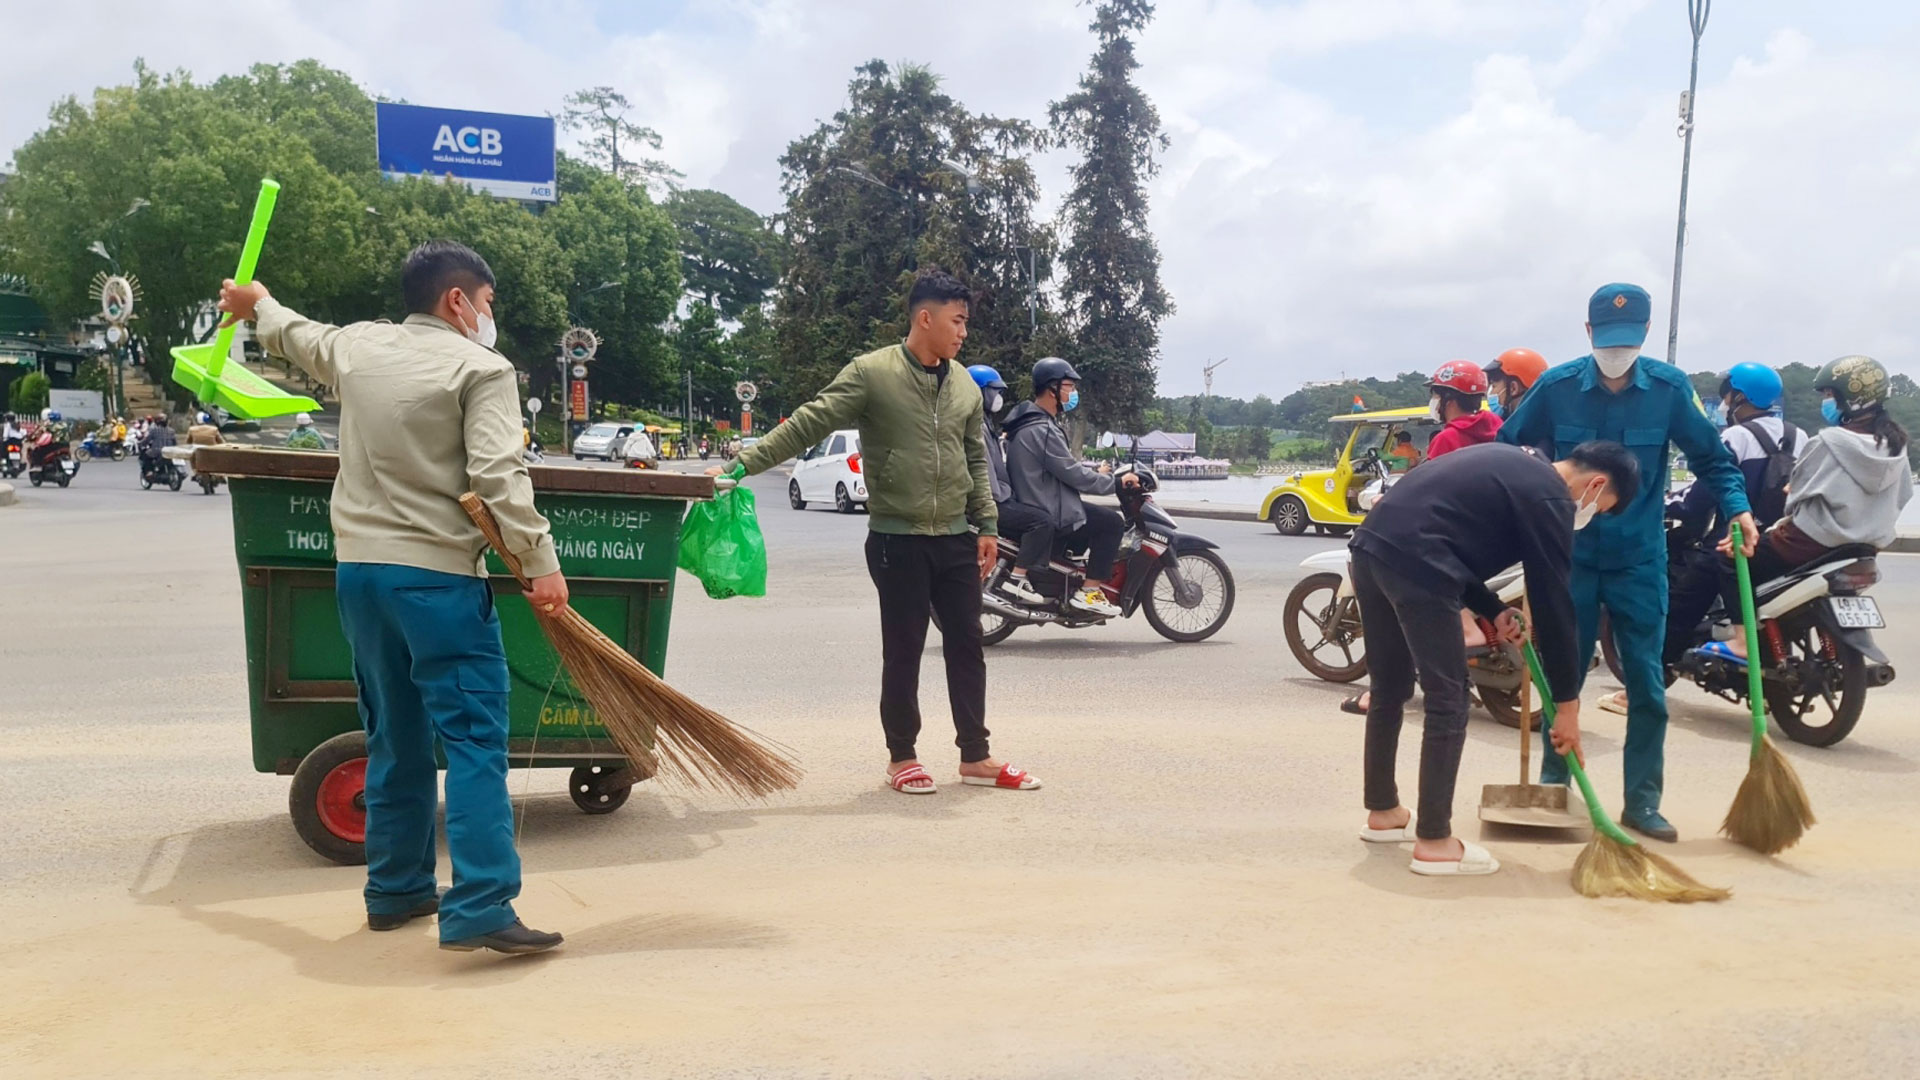 Đội trật tự và lực lượng dân quân tự vệ tham gia hỗ trợ dọn dẹp vật liệu xây dựng bị rơi vãi gây mất vệ sinh môi trường ở Cầu Ông Đạo, TP Đà Lạt